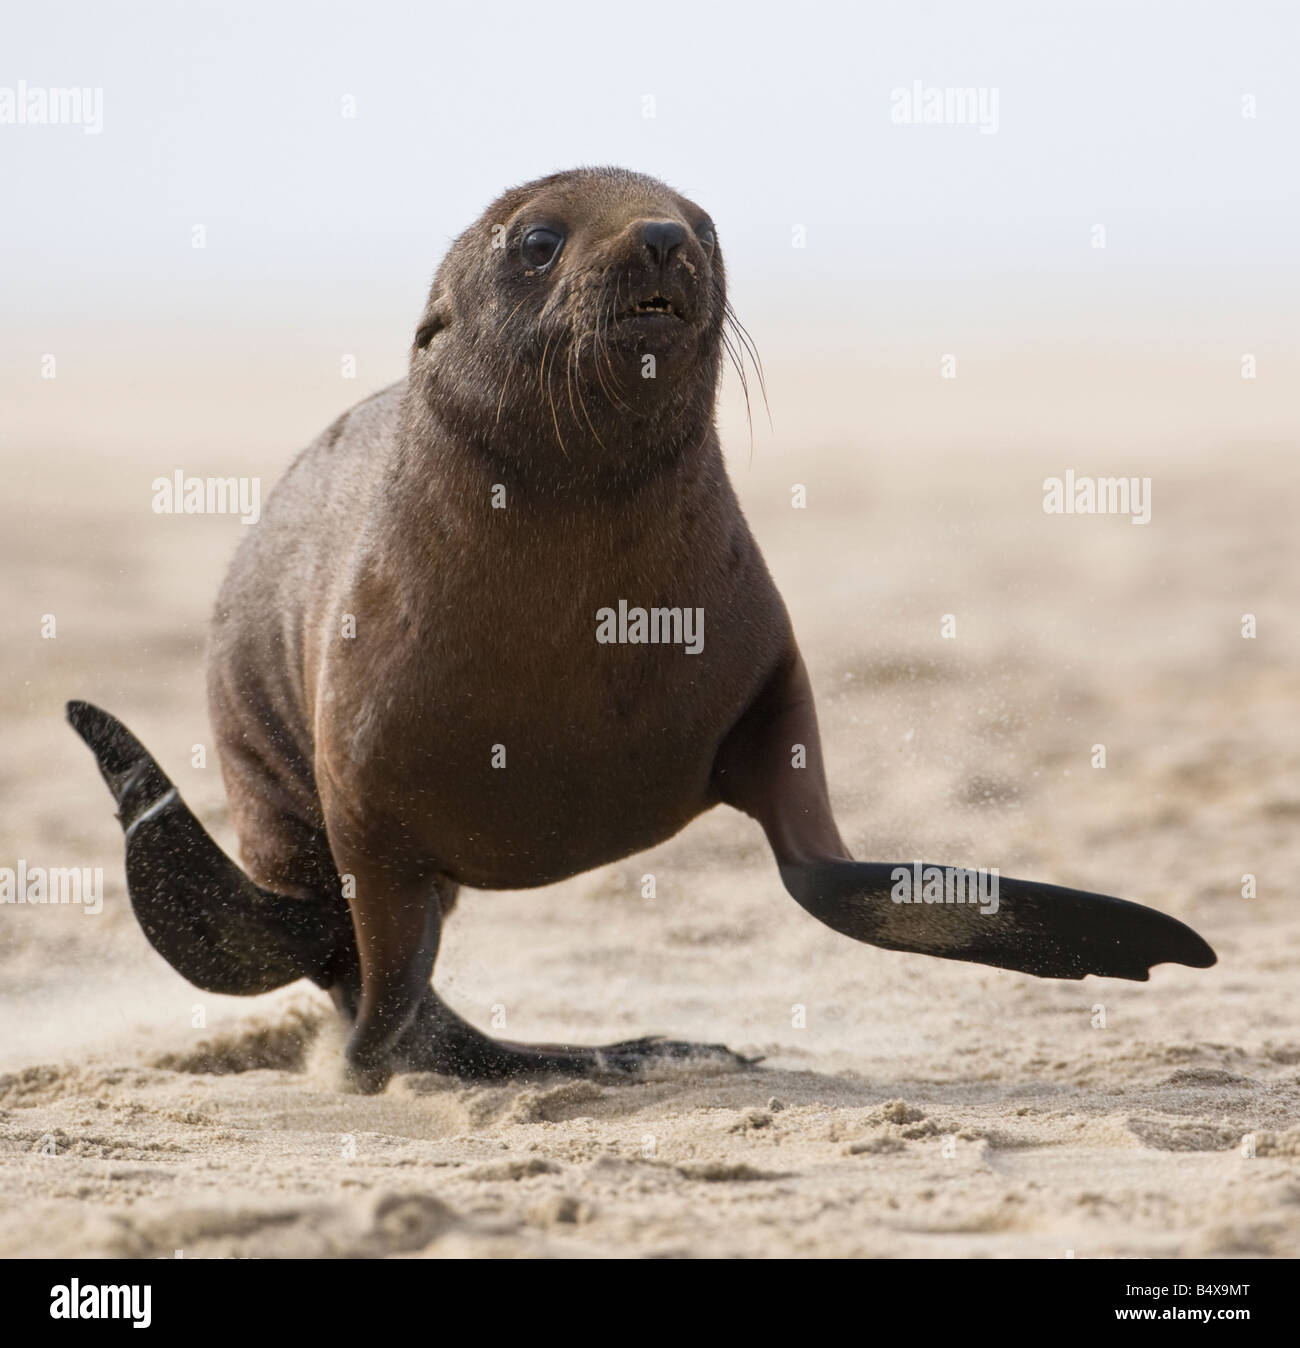 Seal running on beach Stock Photo